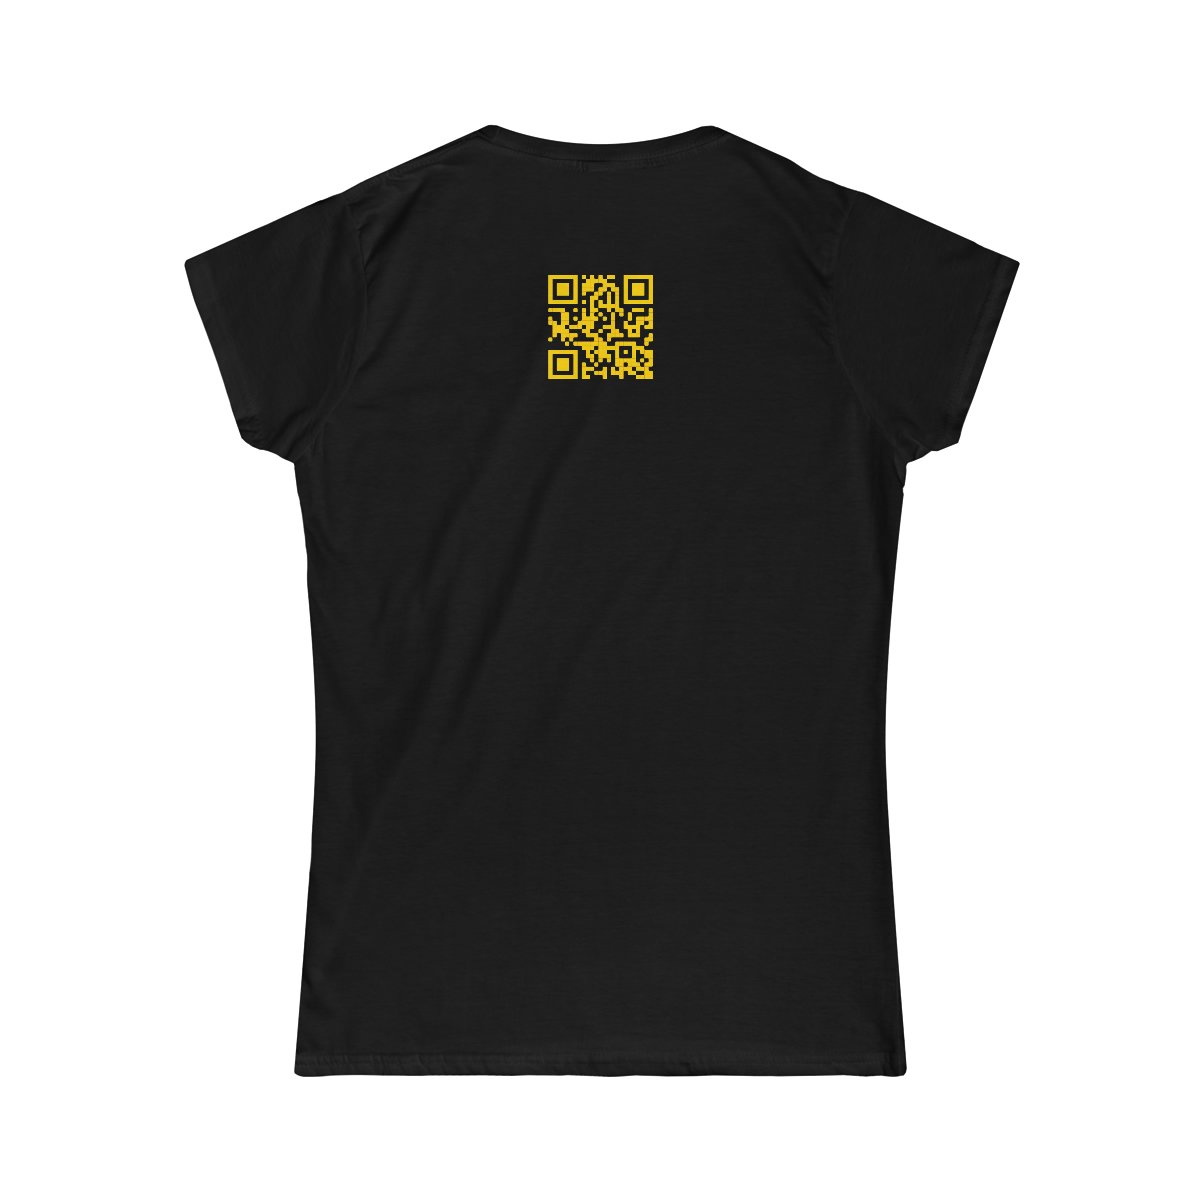 Wanus – Die Summer Die Women’s Short Sleeve Tshirt 64000L